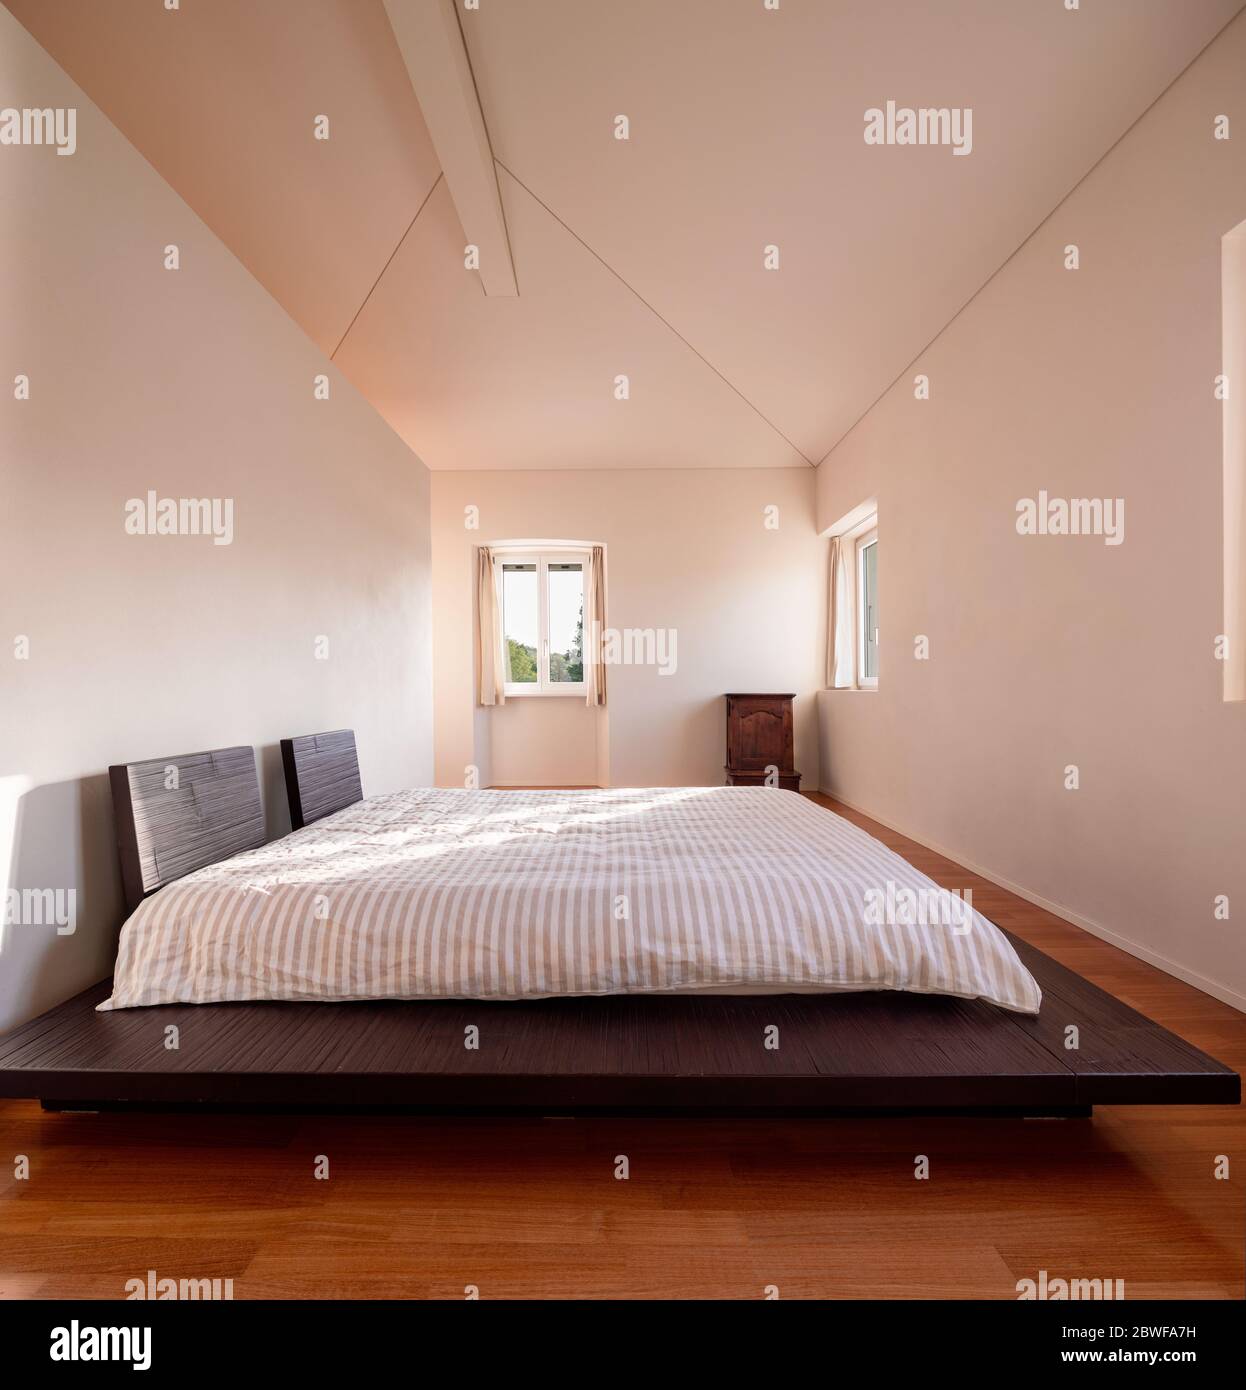 Intérieur d'une chambre minimale, avec un seul lit et un faisceau de lumière entrant. Le sol est en bois et le lit est bas, de style japonais. Banque D'Images